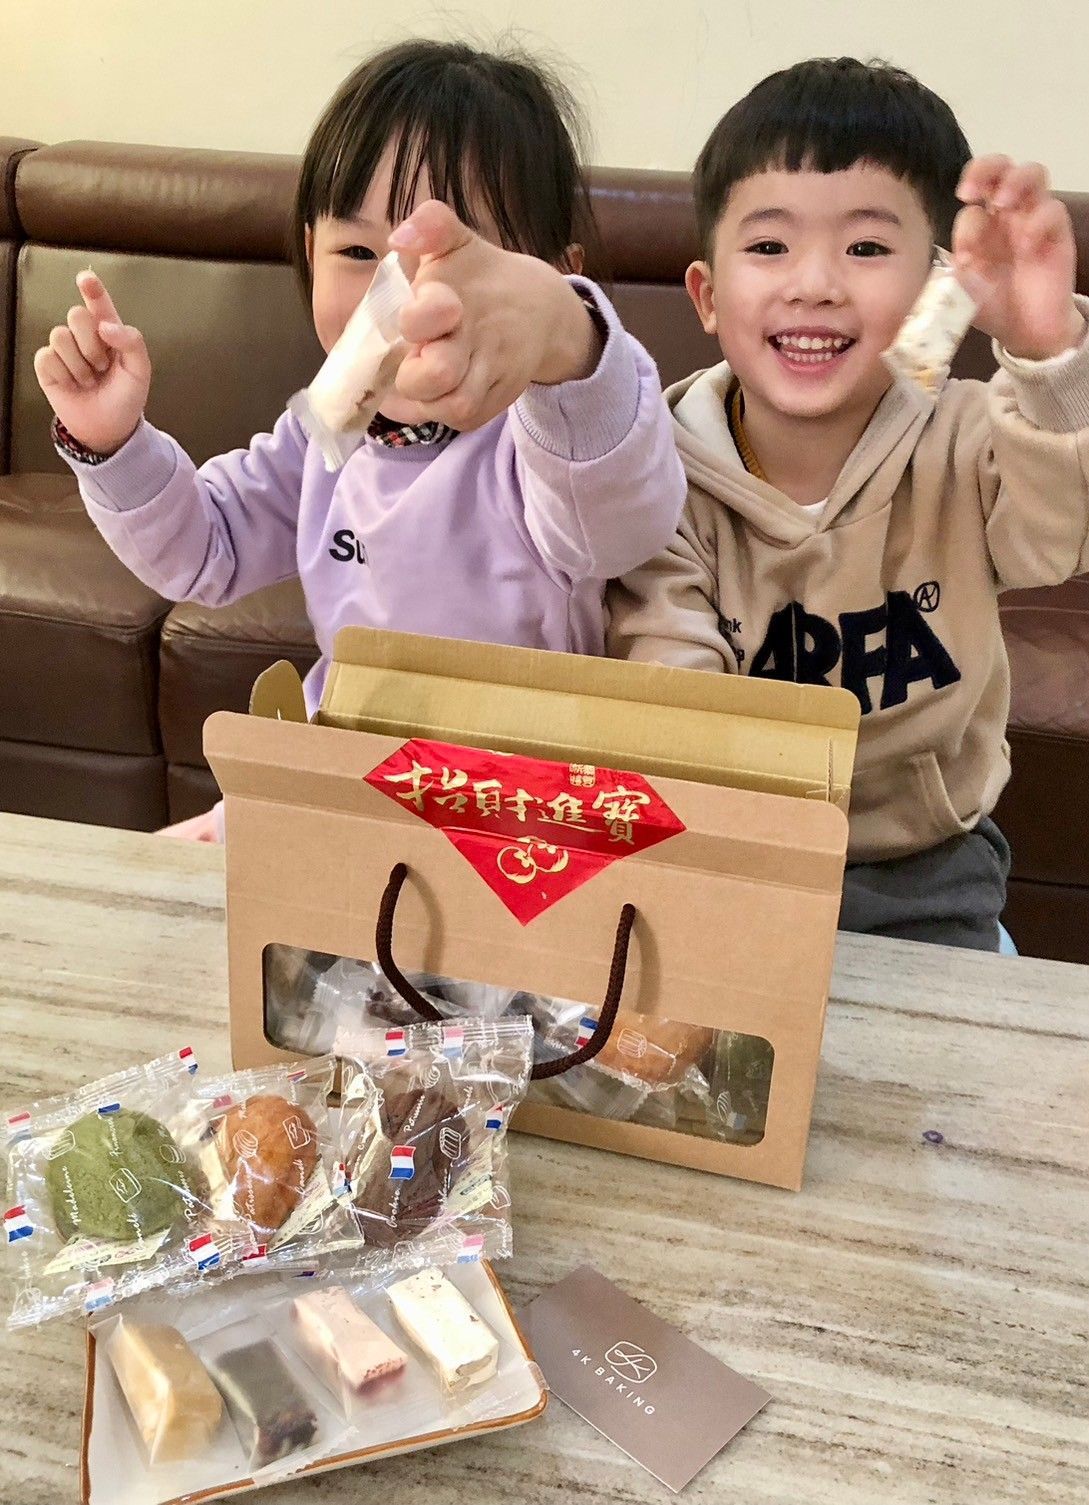 [媽咪來開箱] 4K手作烘焙-綜合春節禮盒~吃甜甜好過年!新